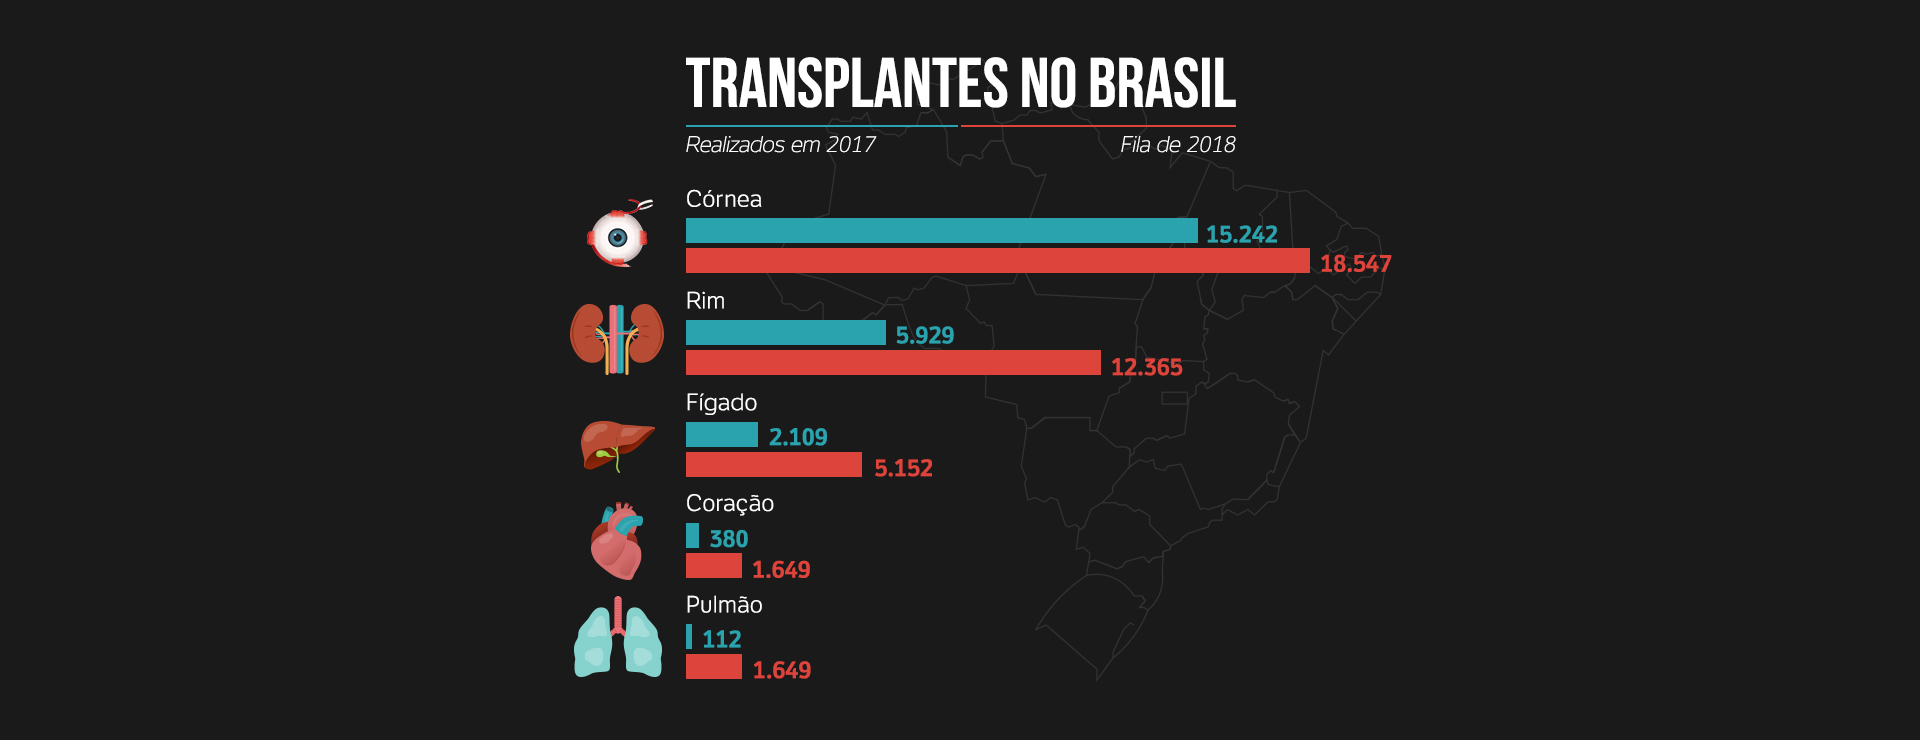 Fonte: ABTO - Associação Brasileira de Transplante de Órgãos